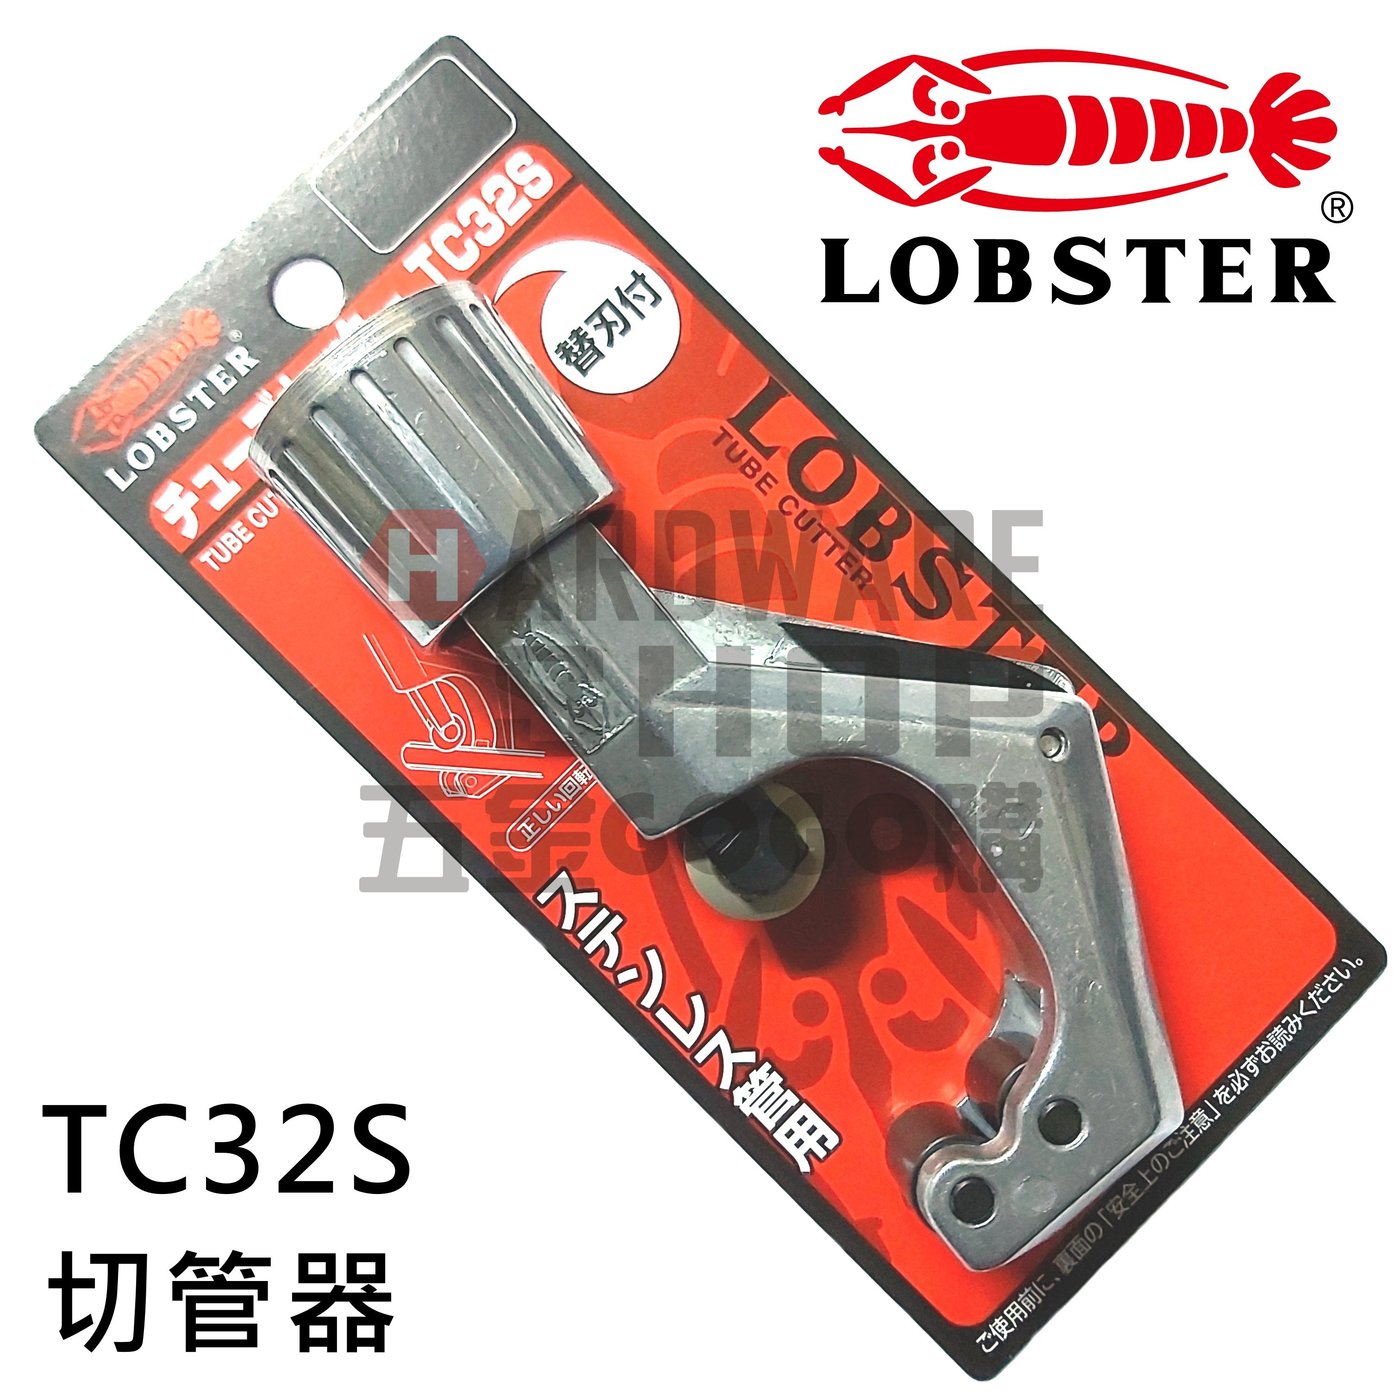 日本 LOBSTER 蝦牌 切管器 不銹鋼管 TC 32S チューブカッター Tube 